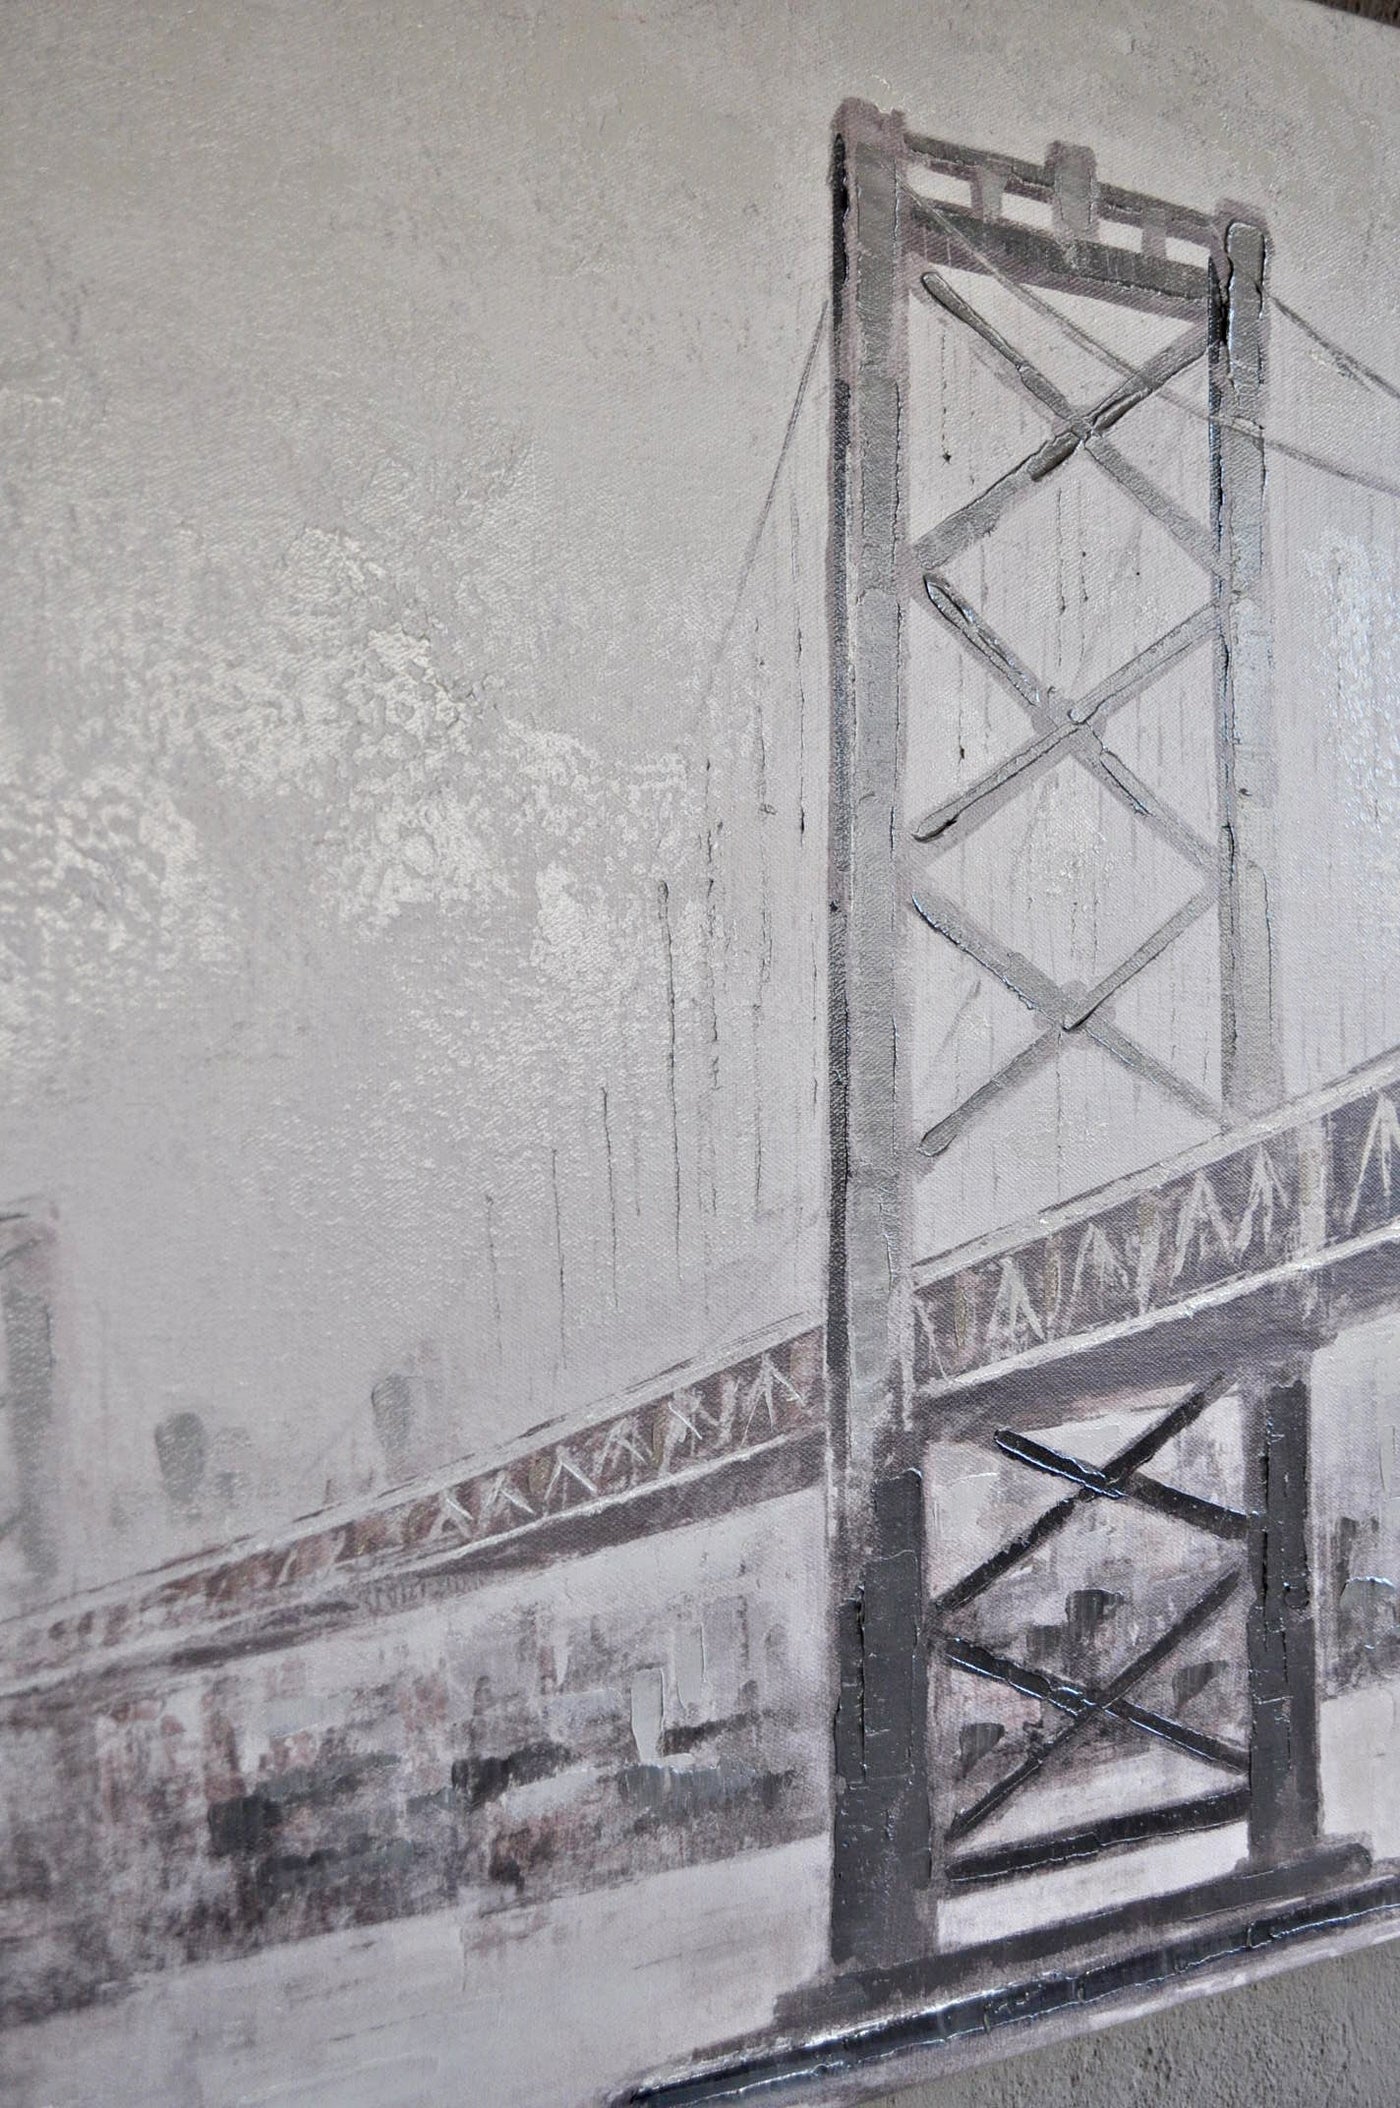 Leinwand Bild mit Hängebrücke als Motiv 70 x 100 cm Schöne Deko